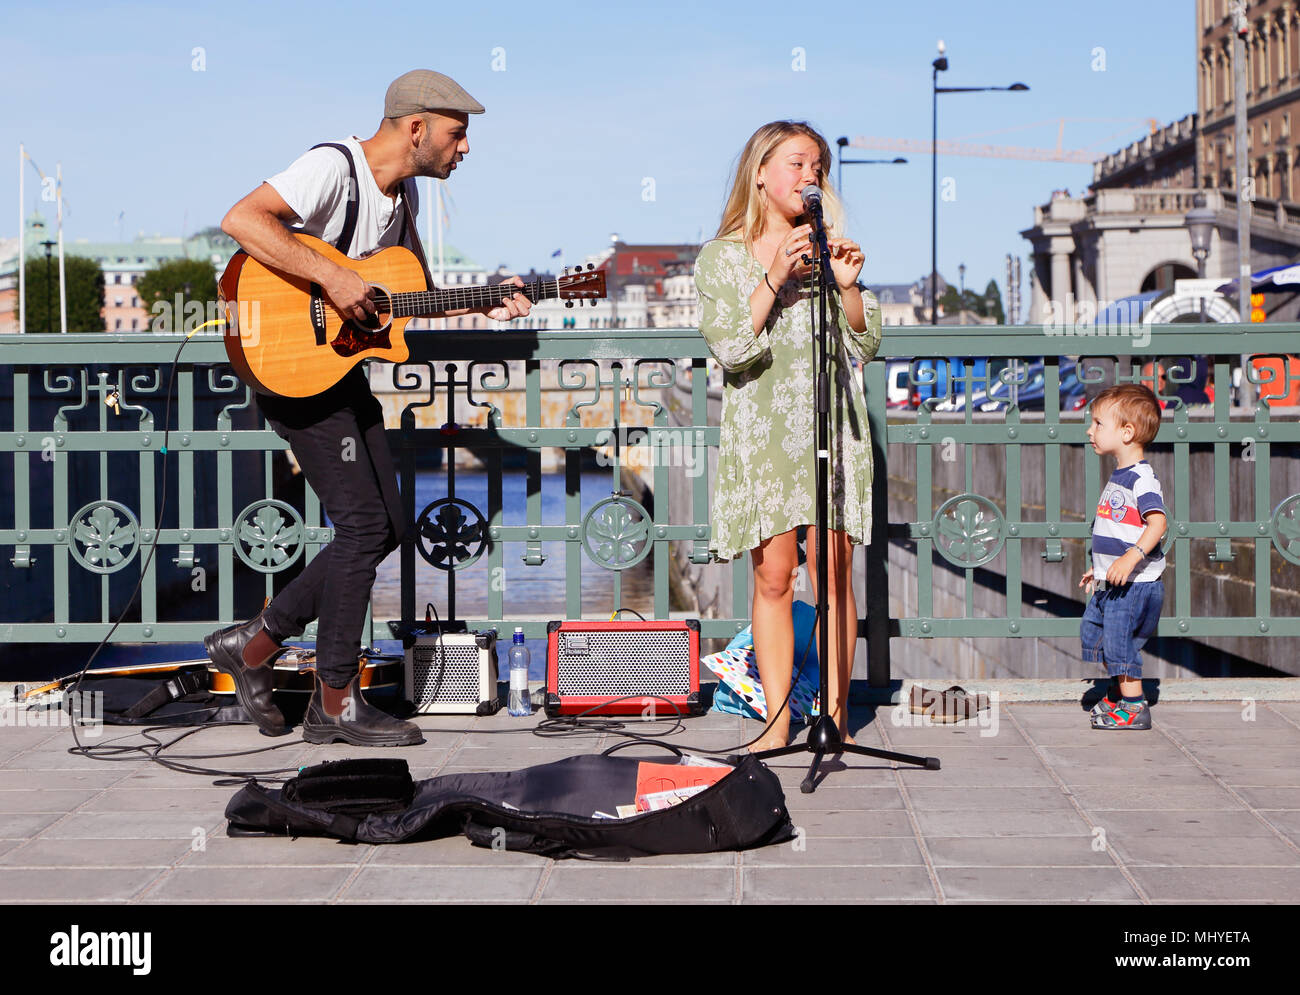 Stoccolma, Svezia - Agosto 19, 2015: due musicisti di strada sul ponte Stallbron a Stoccolma con un interessato little boy dal pubblico. Foto Stock